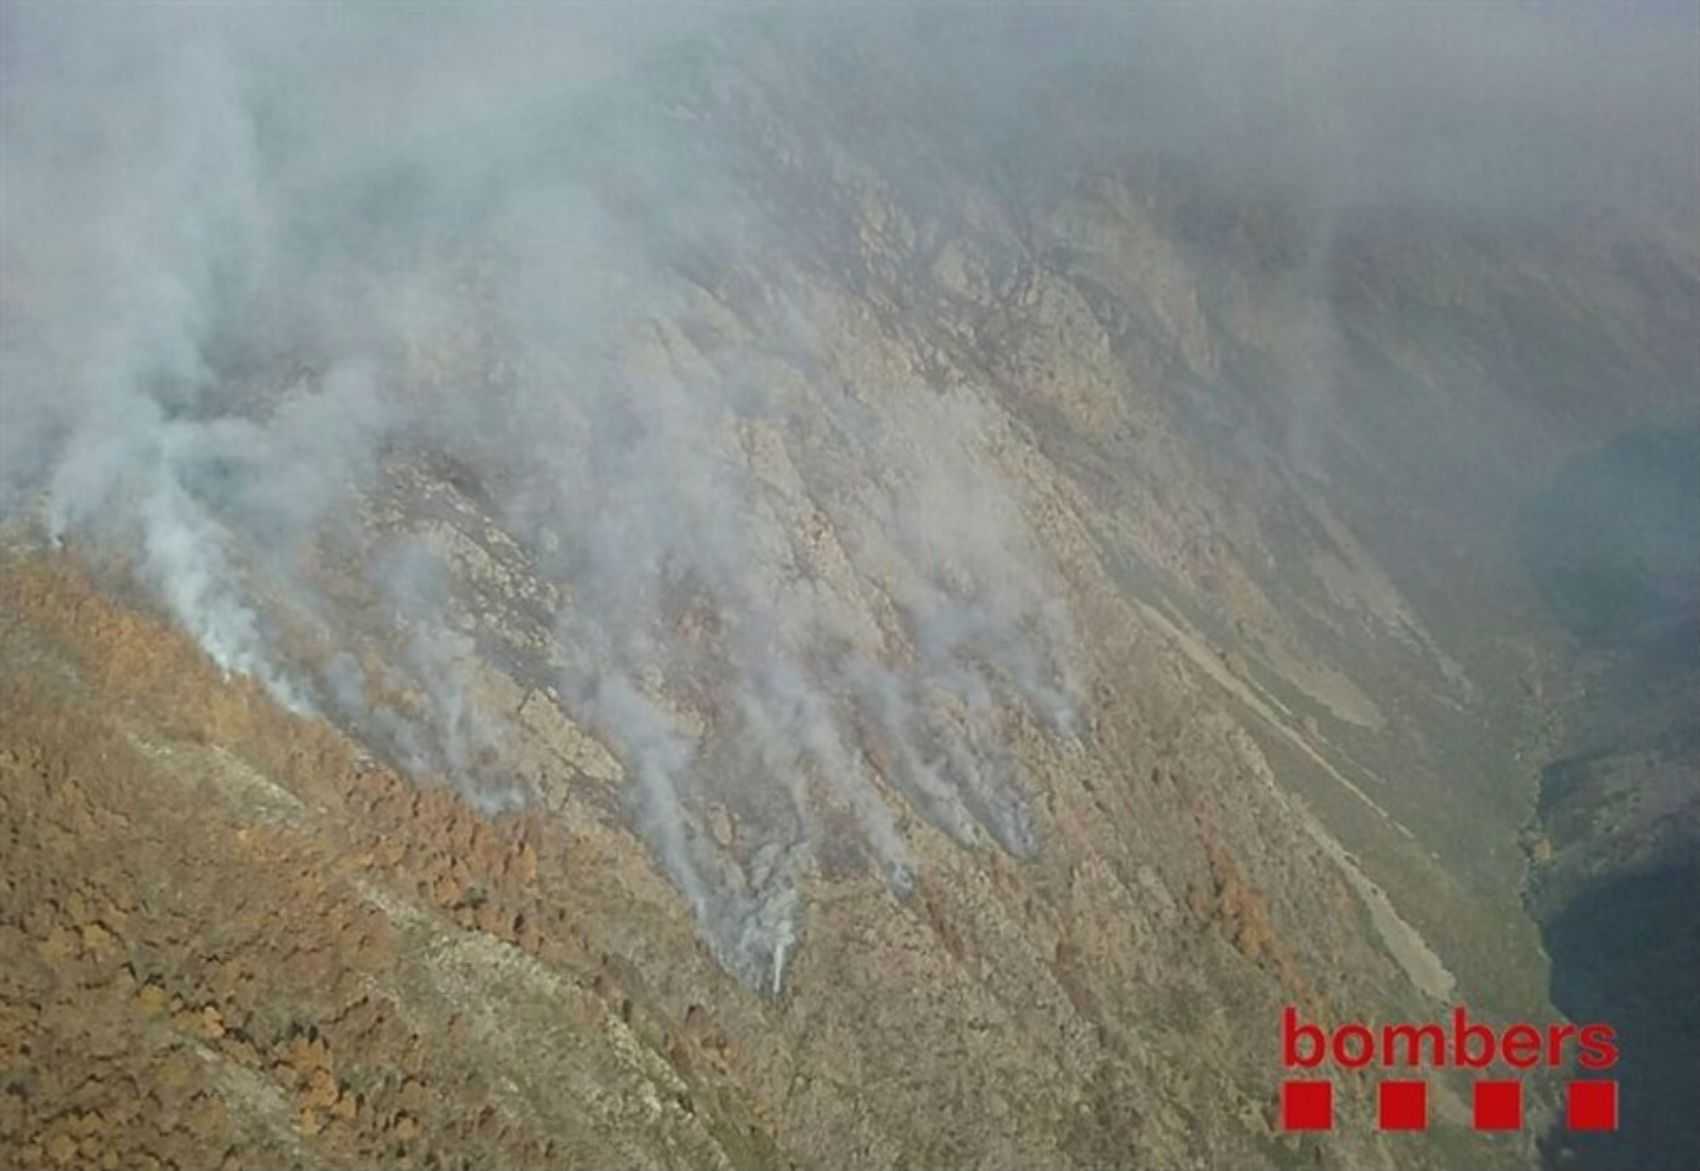 El foc de La Guingueta d'Àneu ha afectat 440 hectàrees